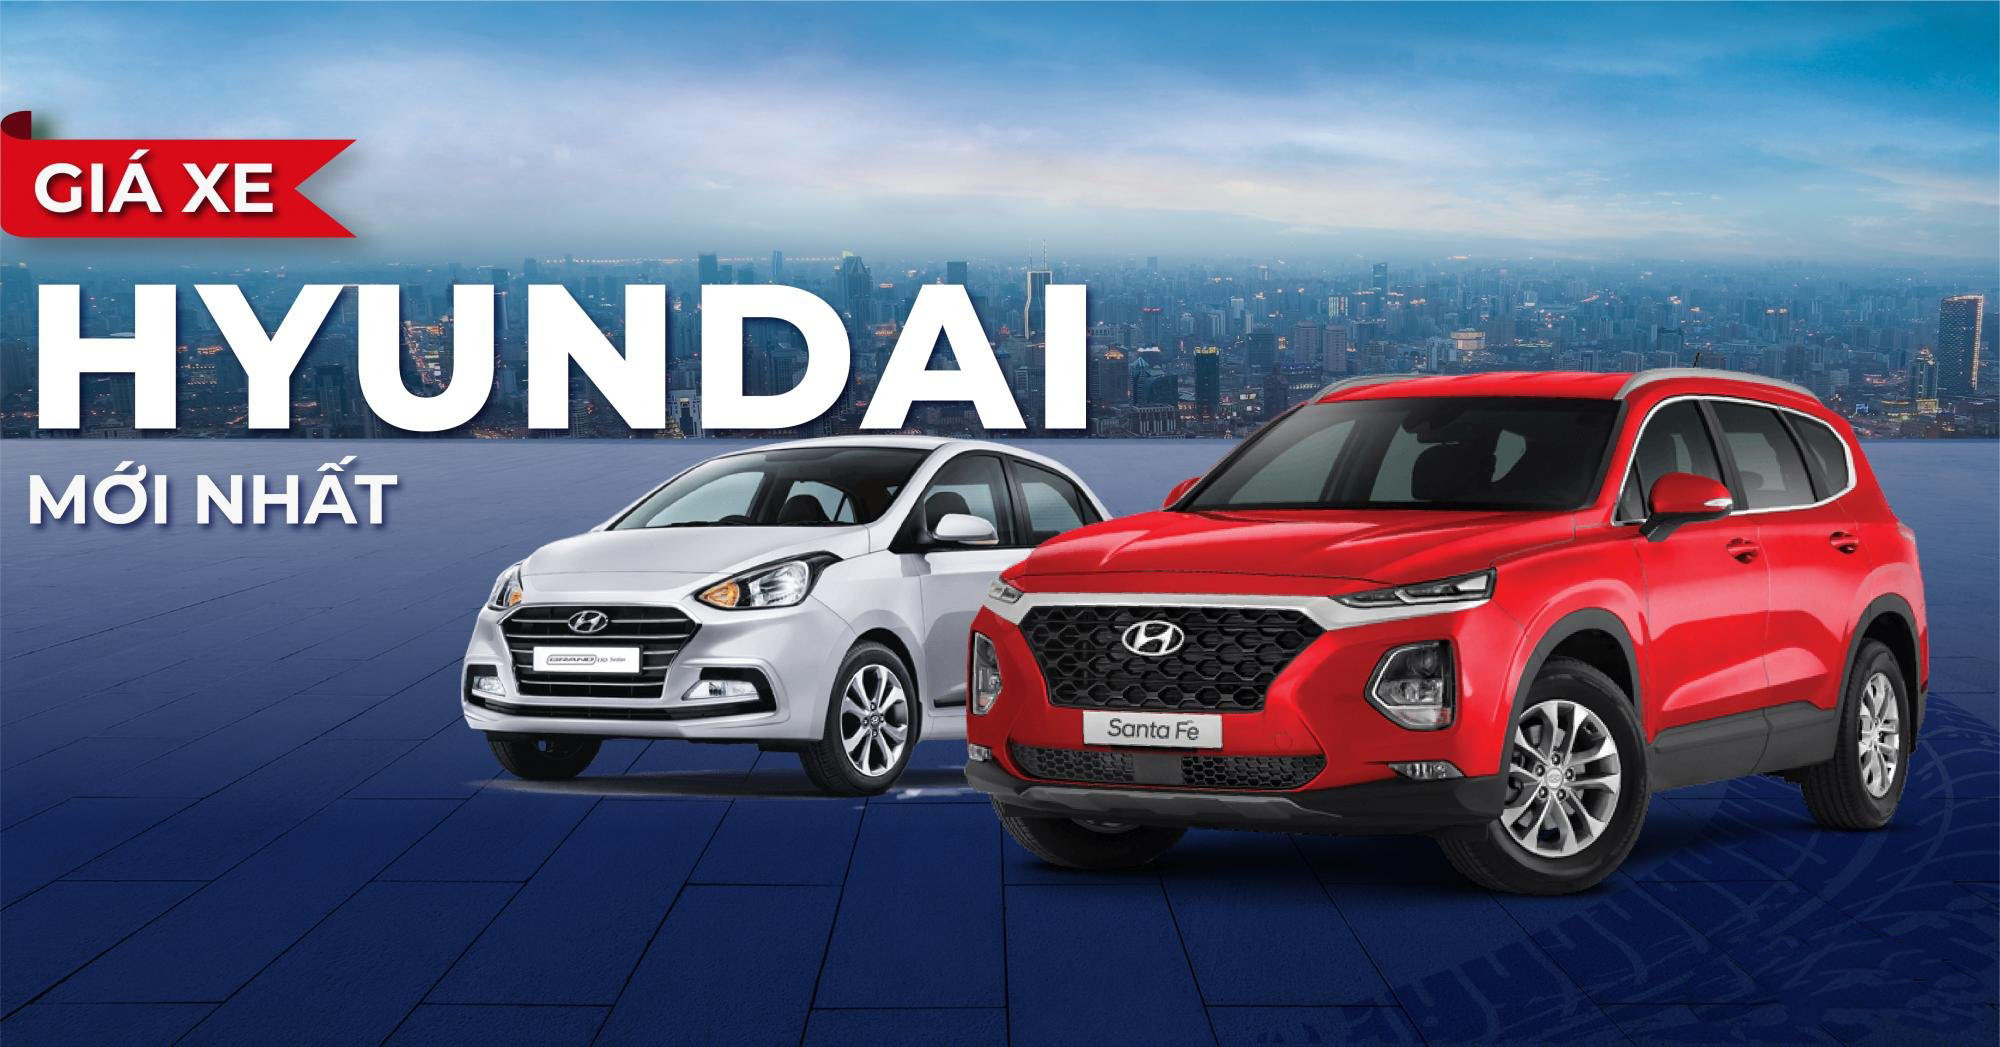 Bảng giá xe Hyundai tháng 7/2022 taị Bình Dương